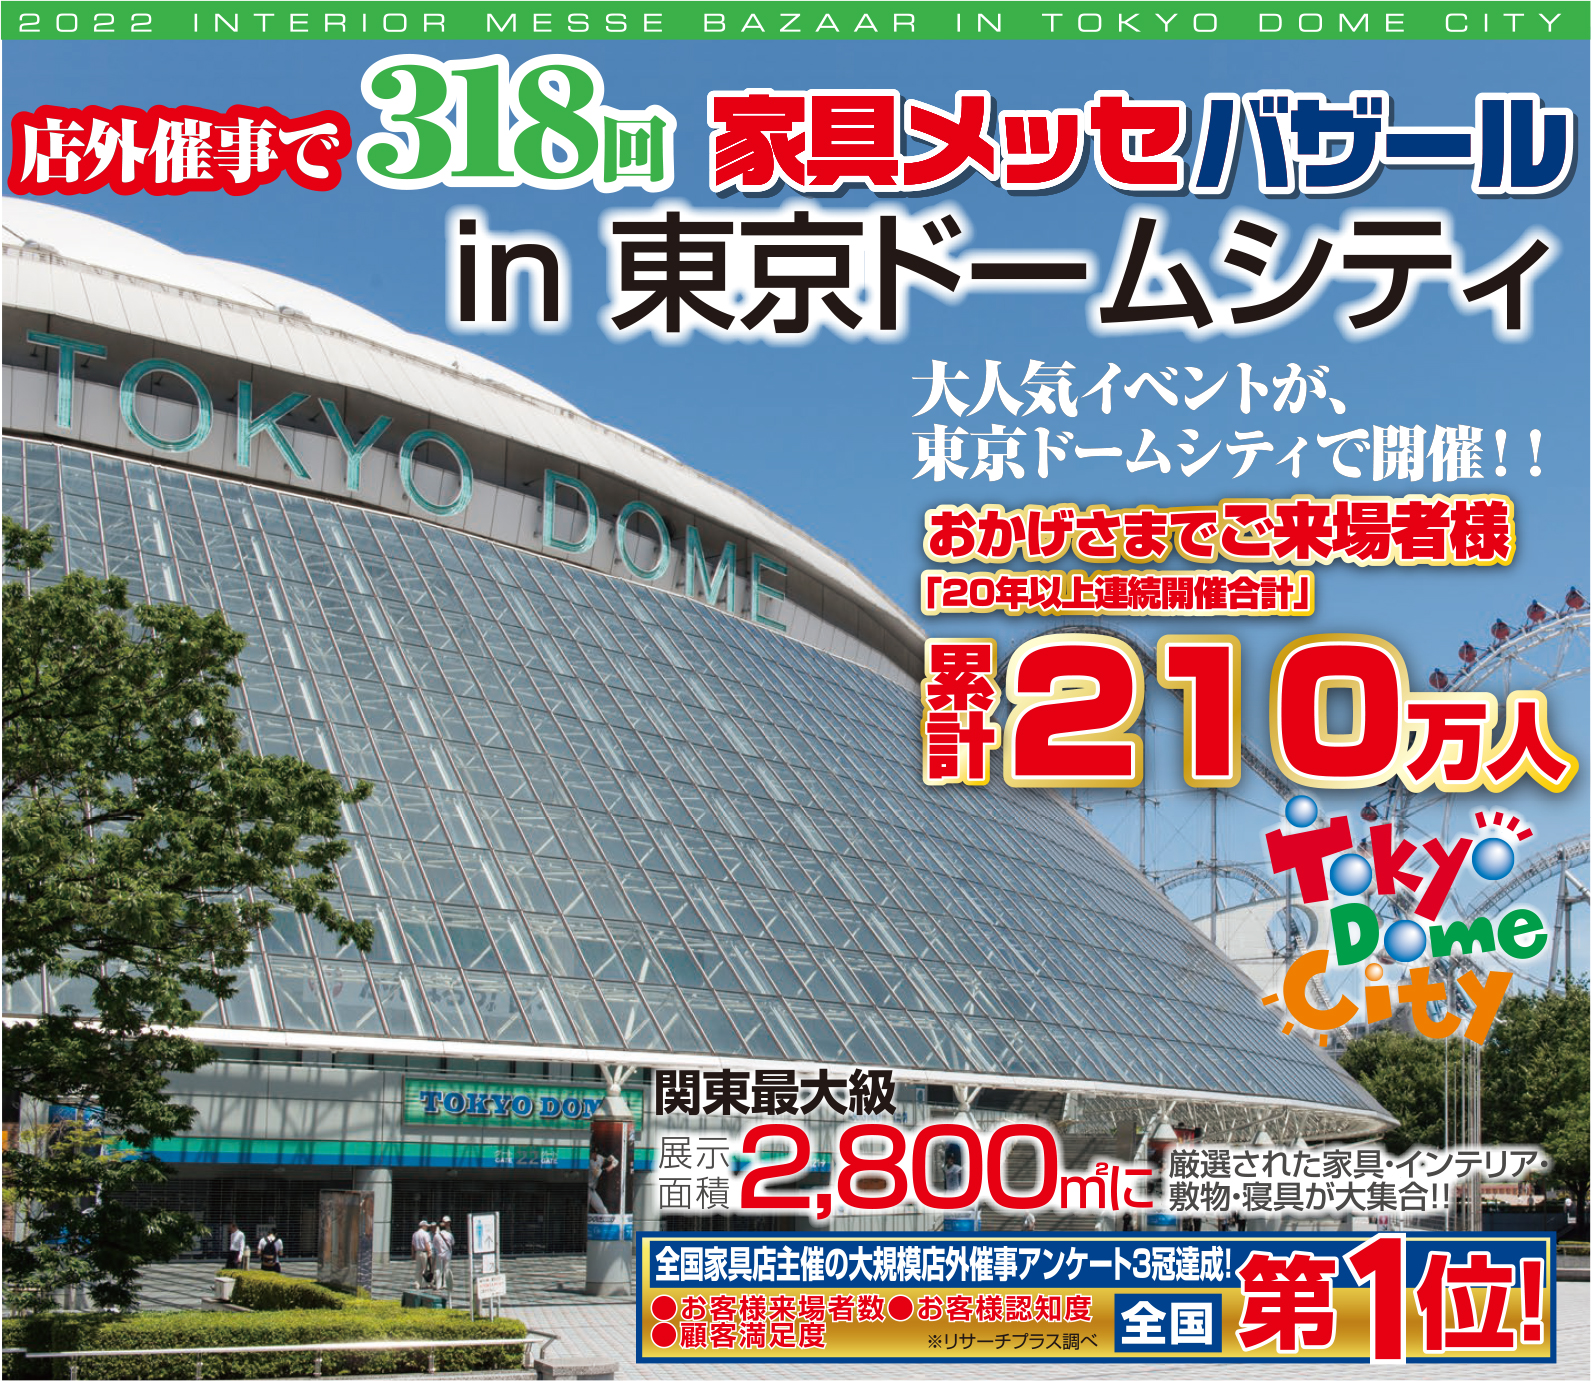 2022年9月17日開催「家具メッセバザール in 東京ドームシティ」に関するお知らせ